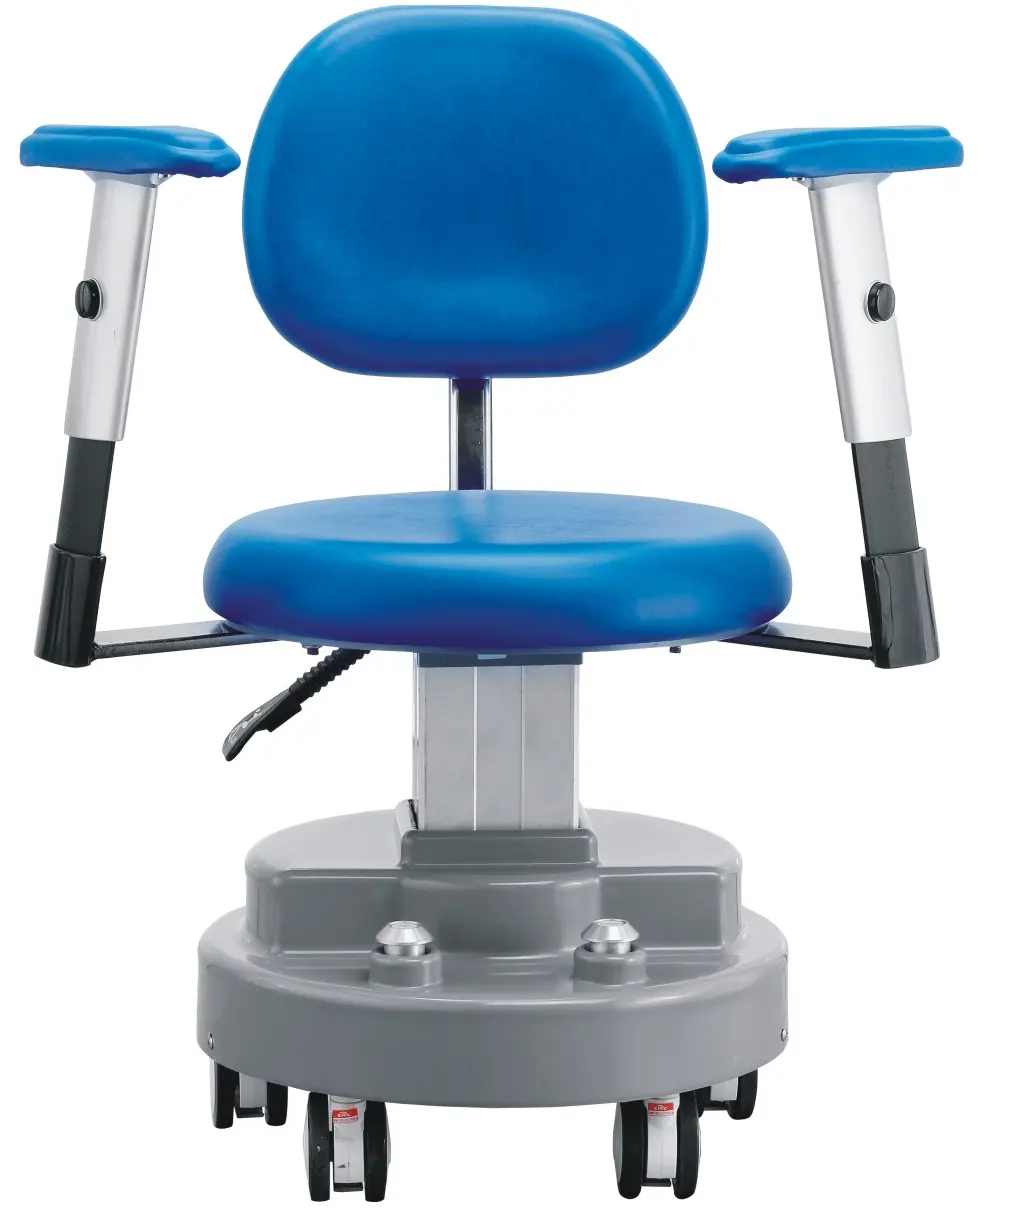 โรงพยาบาลห้องผ่าตัดใช้ความสูงปรับเก้าอี้ผ่าตัดไฟฟ้า/เก้าอี้หมอ